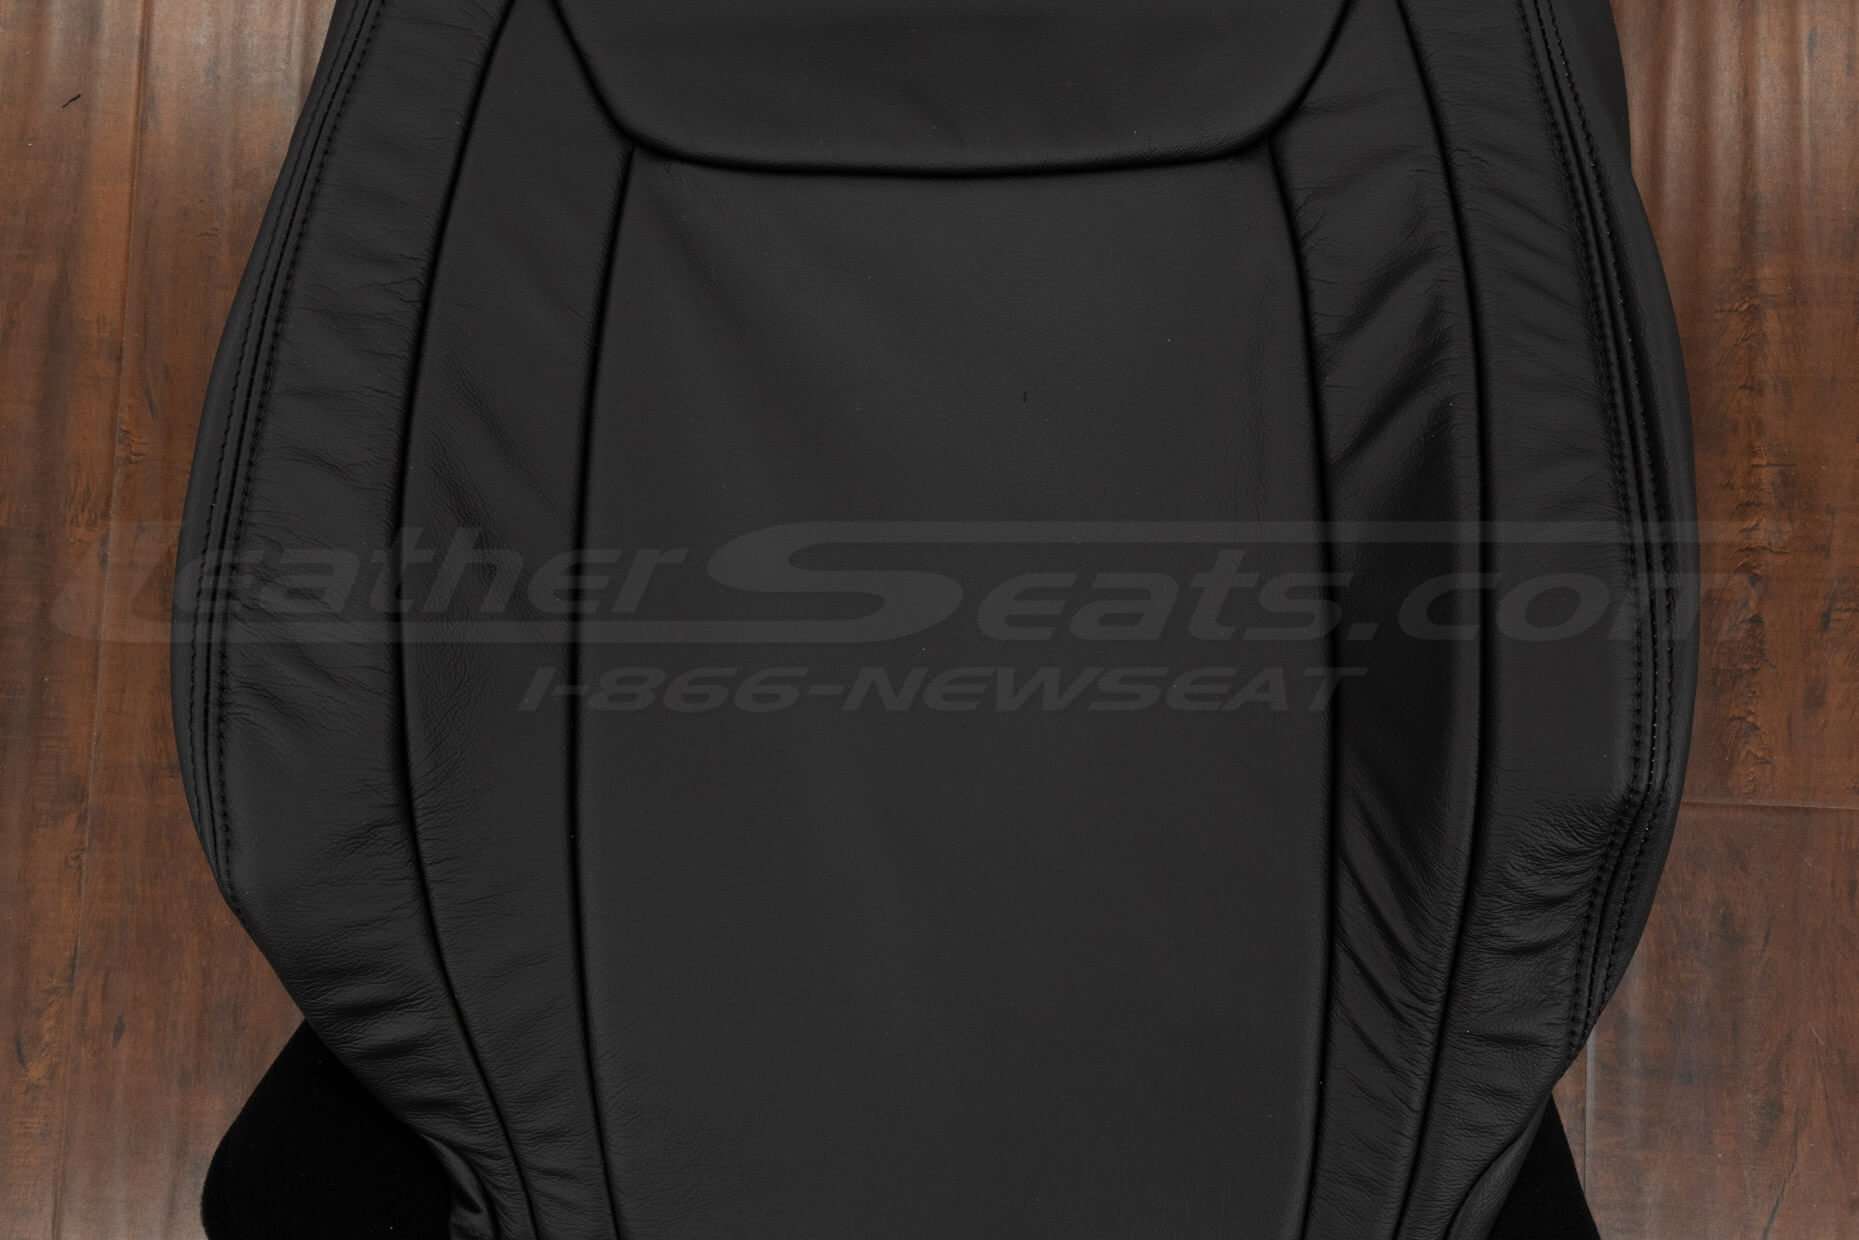 Black insert section of backrest